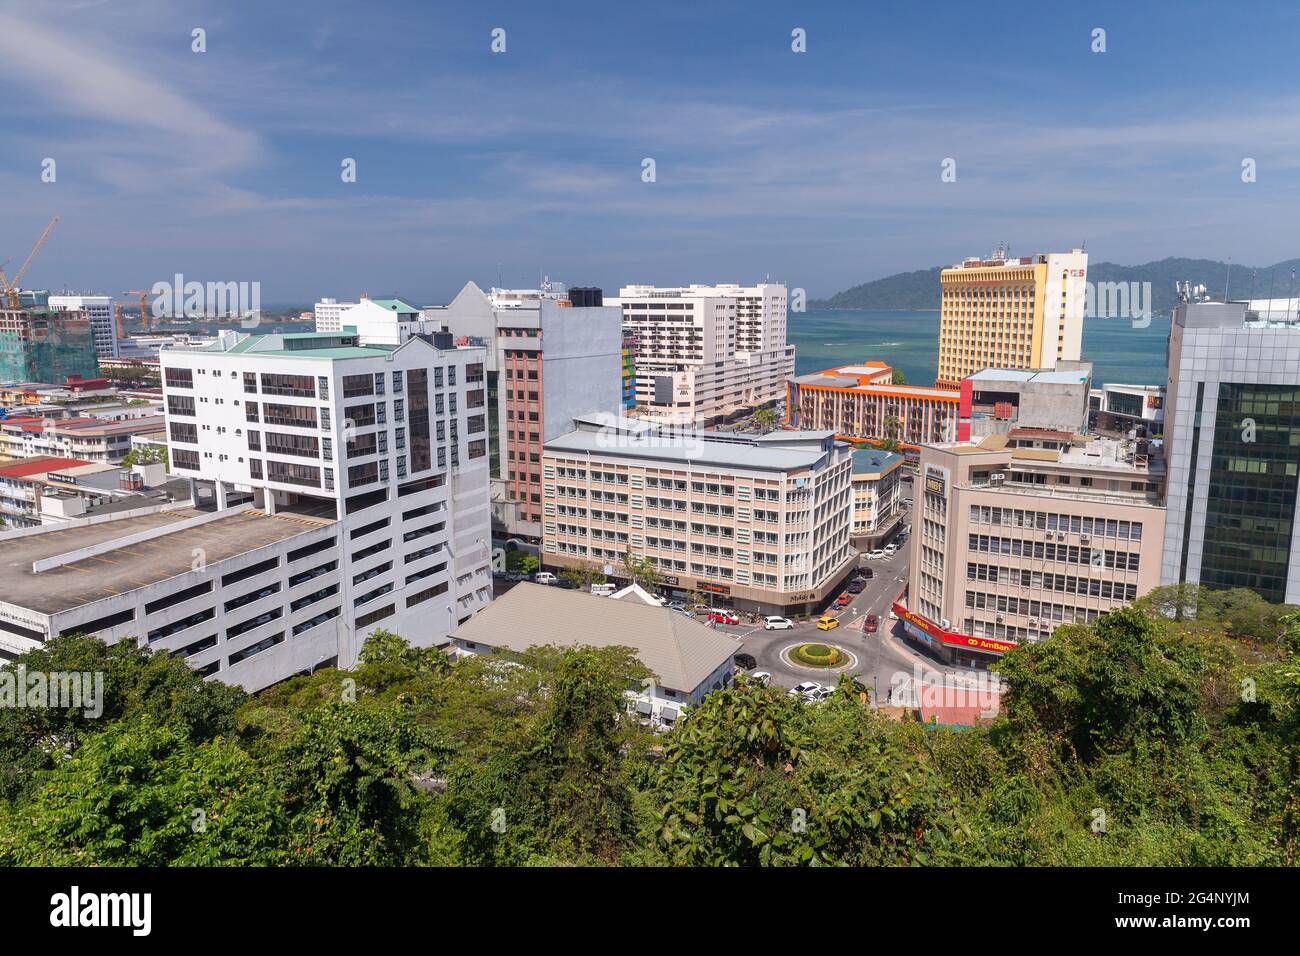 Kota Kinabalu, Malaisie - 17 mars 2019 : vue aérienne sur la ville avec immeubles de bureaux et hôtels modernes Banque D'Images